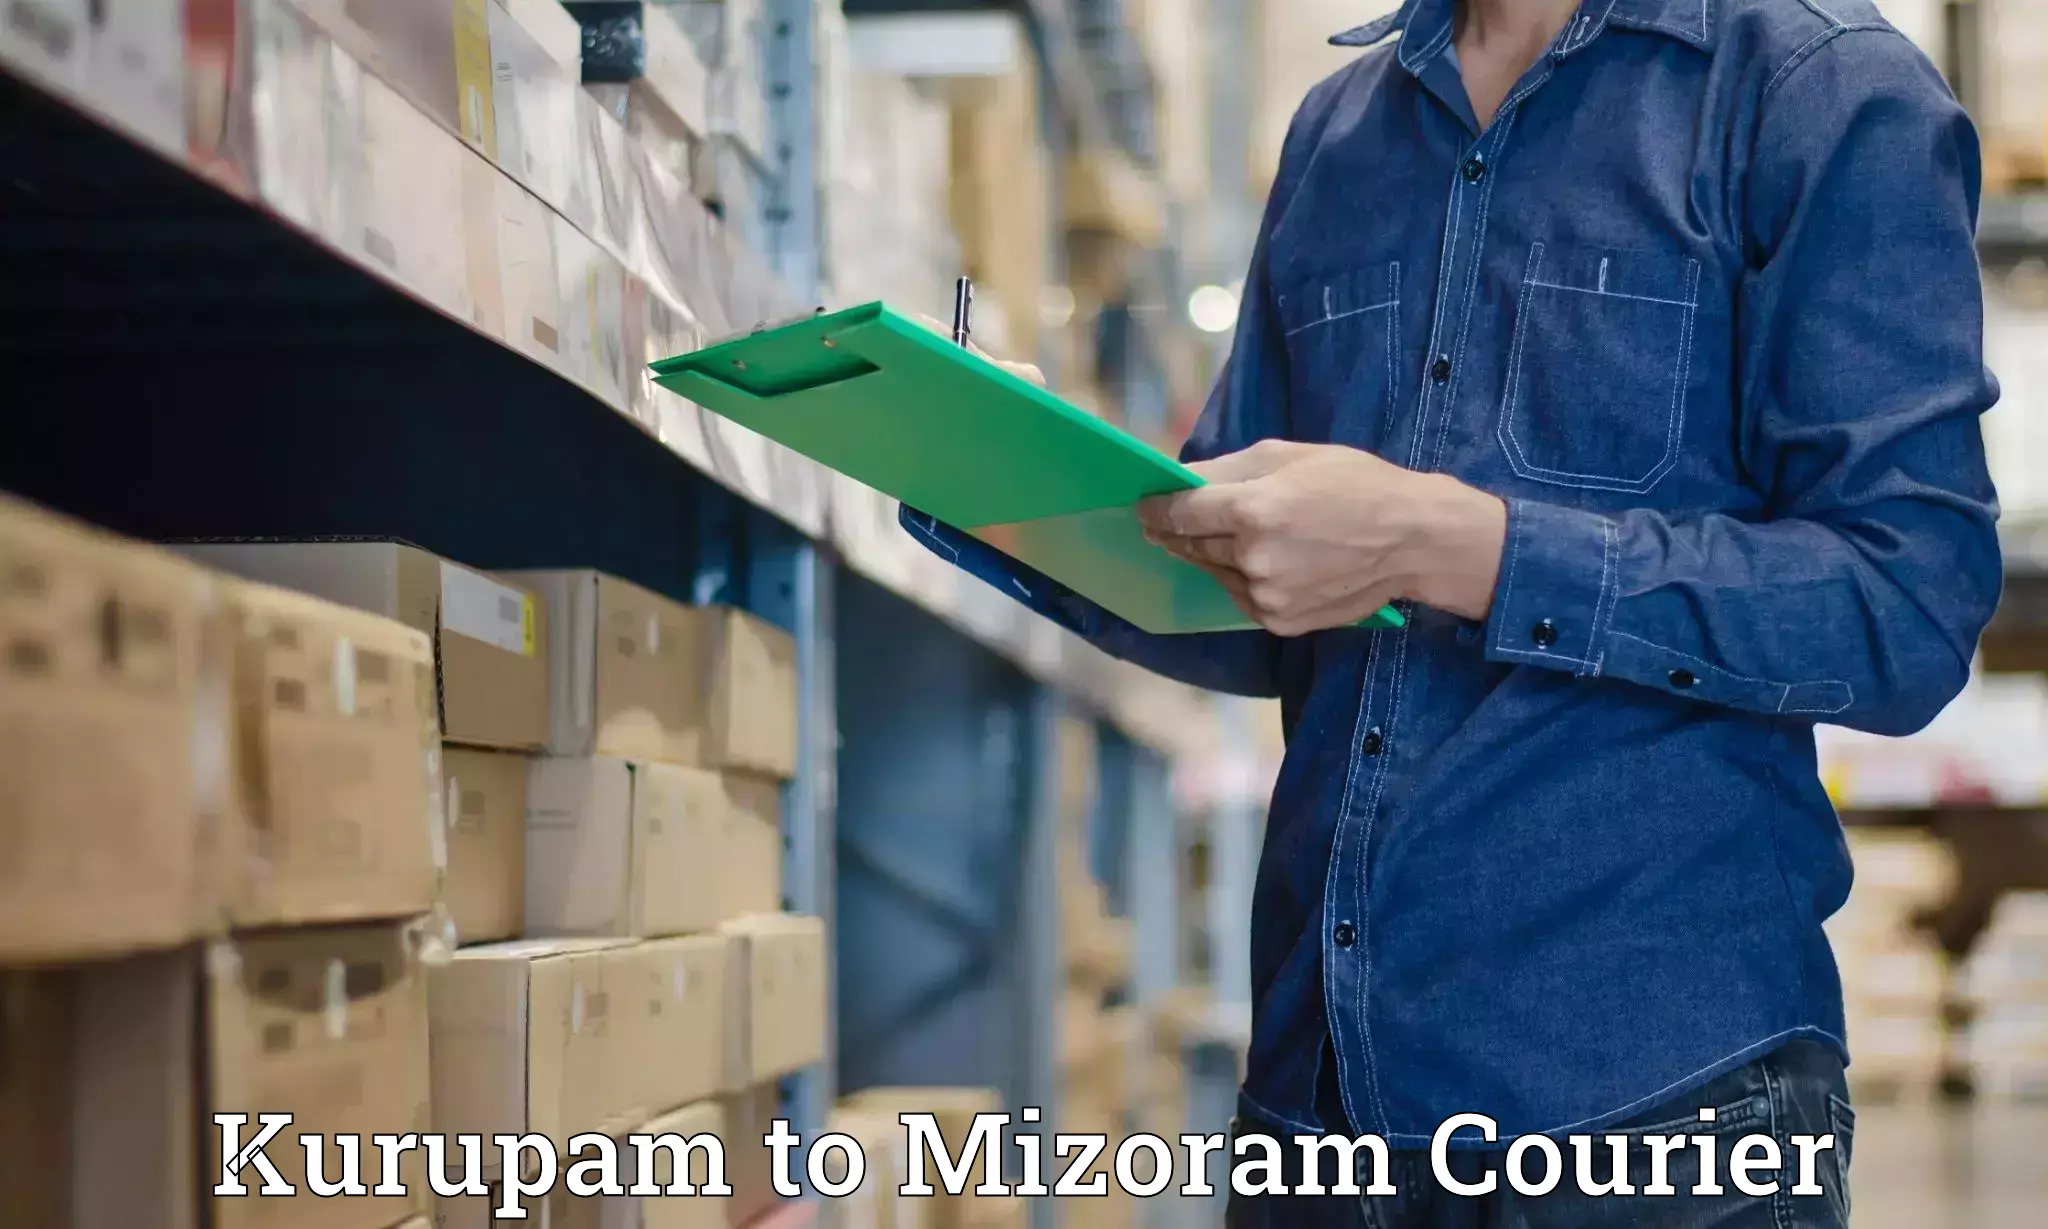 High-performance logistics Kurupam to Mizoram